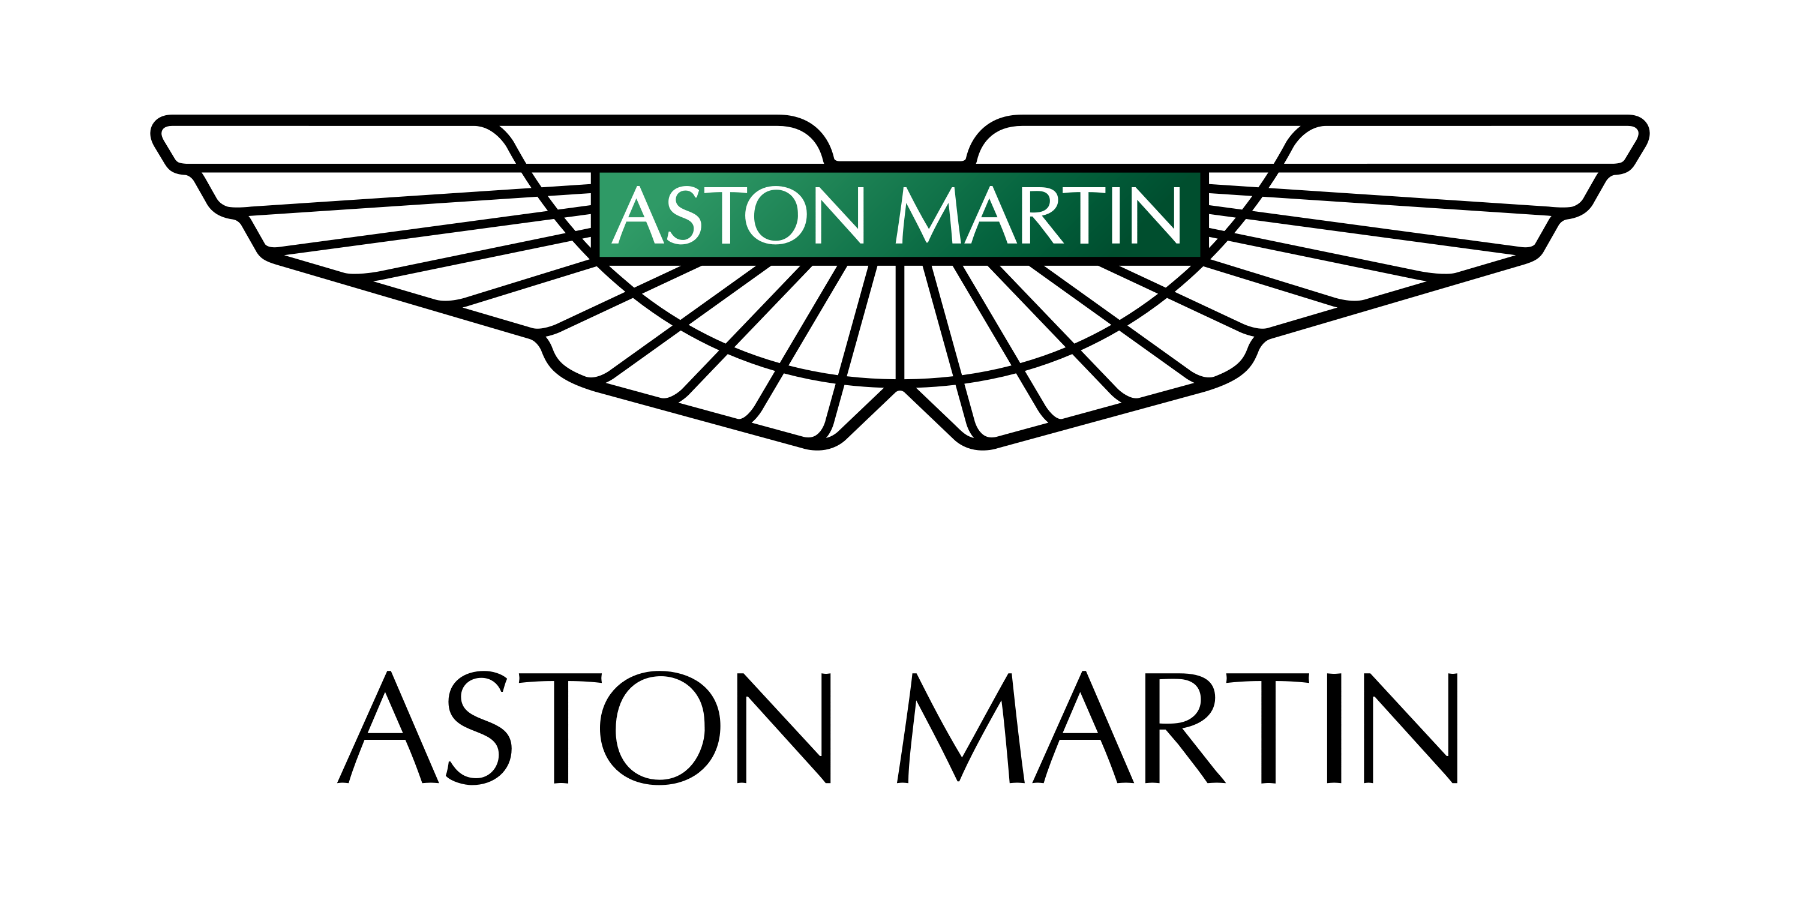 Aston Martin sprawdzenie VIN